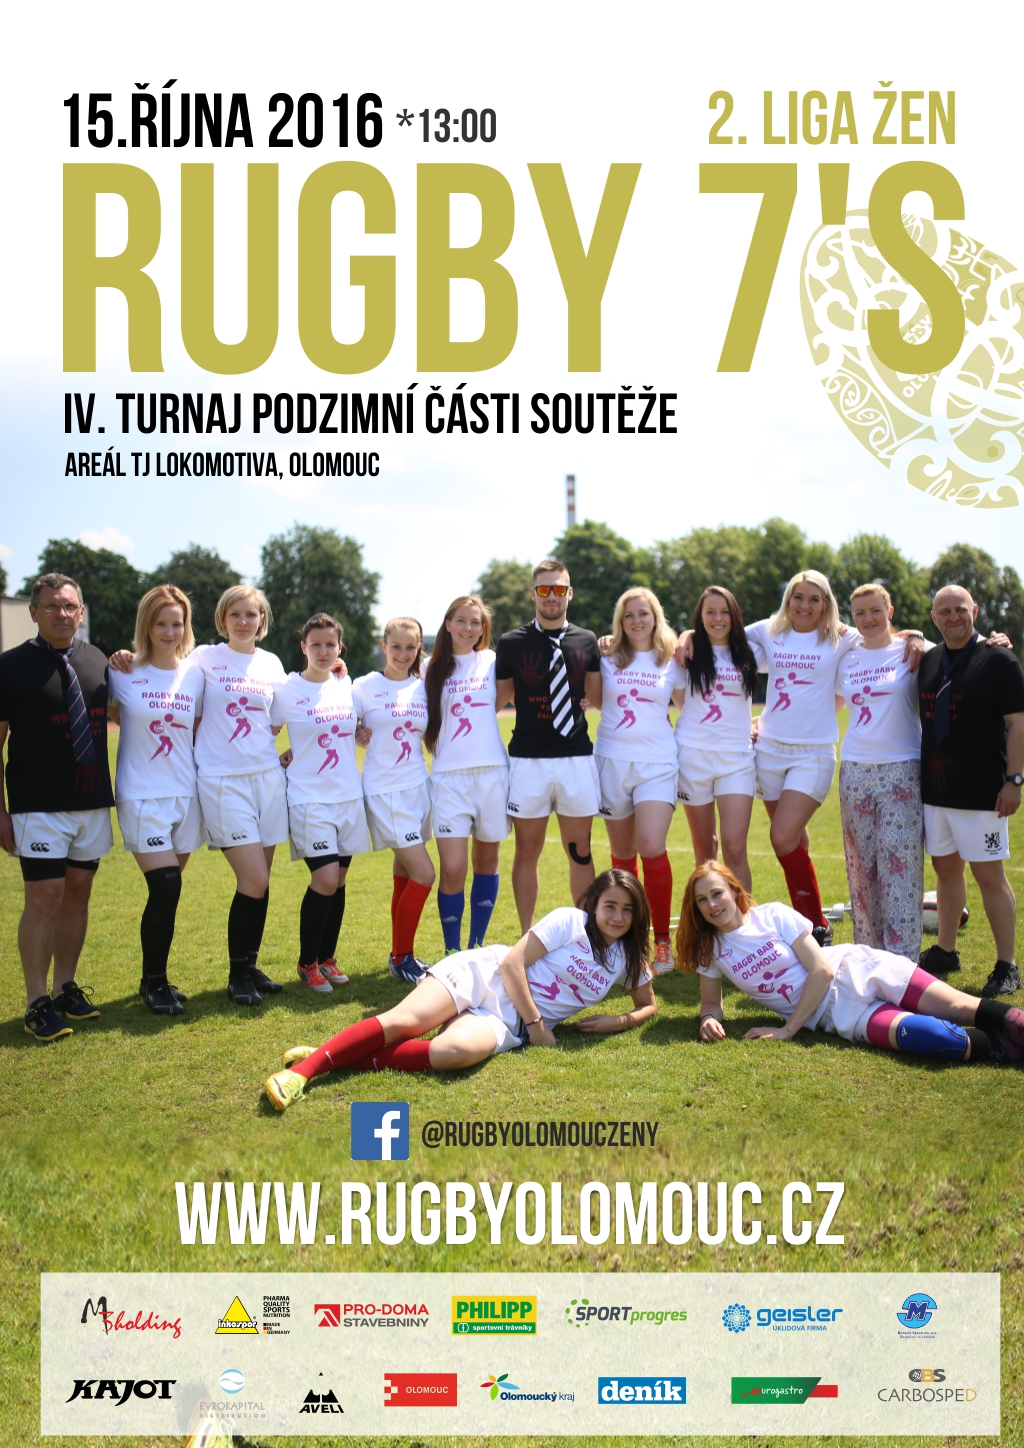 IV. turnaj podzimní části soutěže 2. ligy žen Rugby 7's